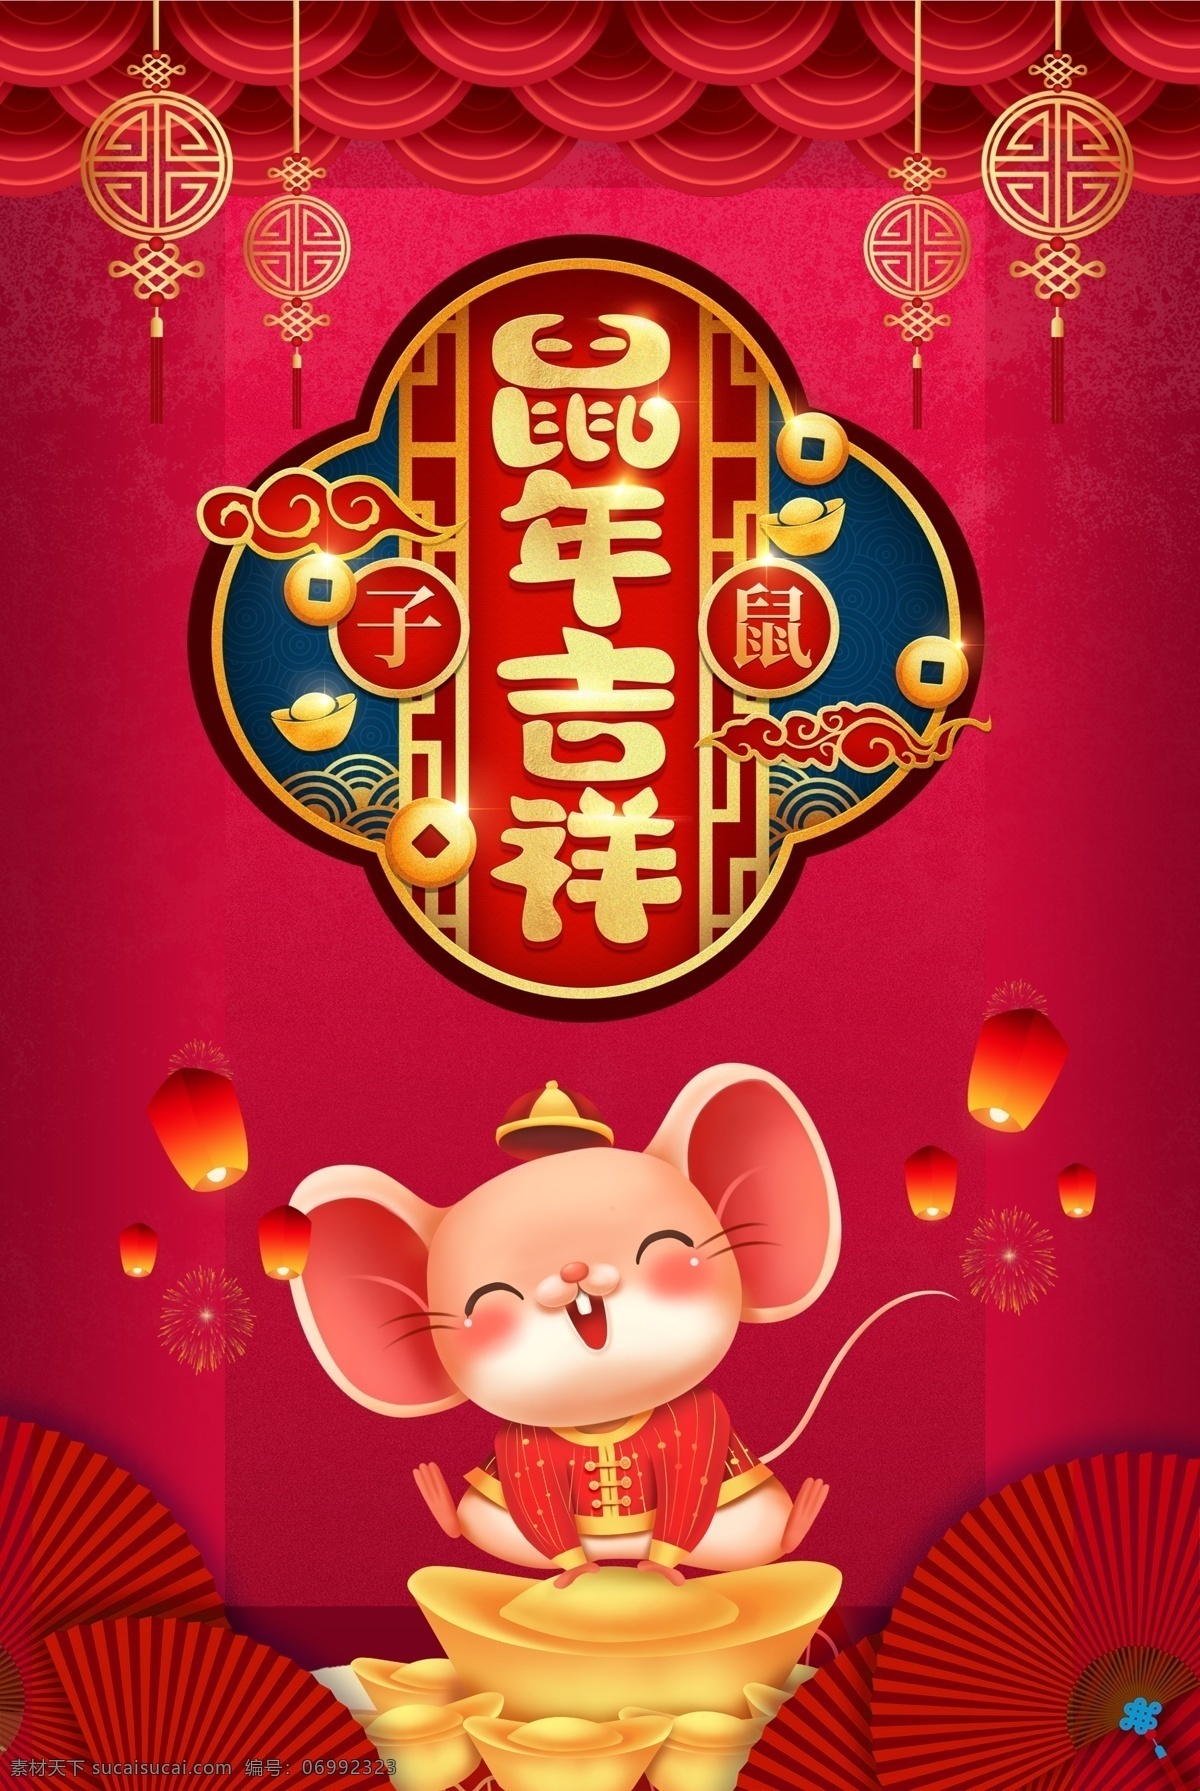 鼠年吉祥 鼠年 2020年 春节 过年 喜庆 传统节日 老鼠 卡通 元宝 剪纸灯笼 孔明灯 波纹 扇子 中国风 子鼠 福 海报